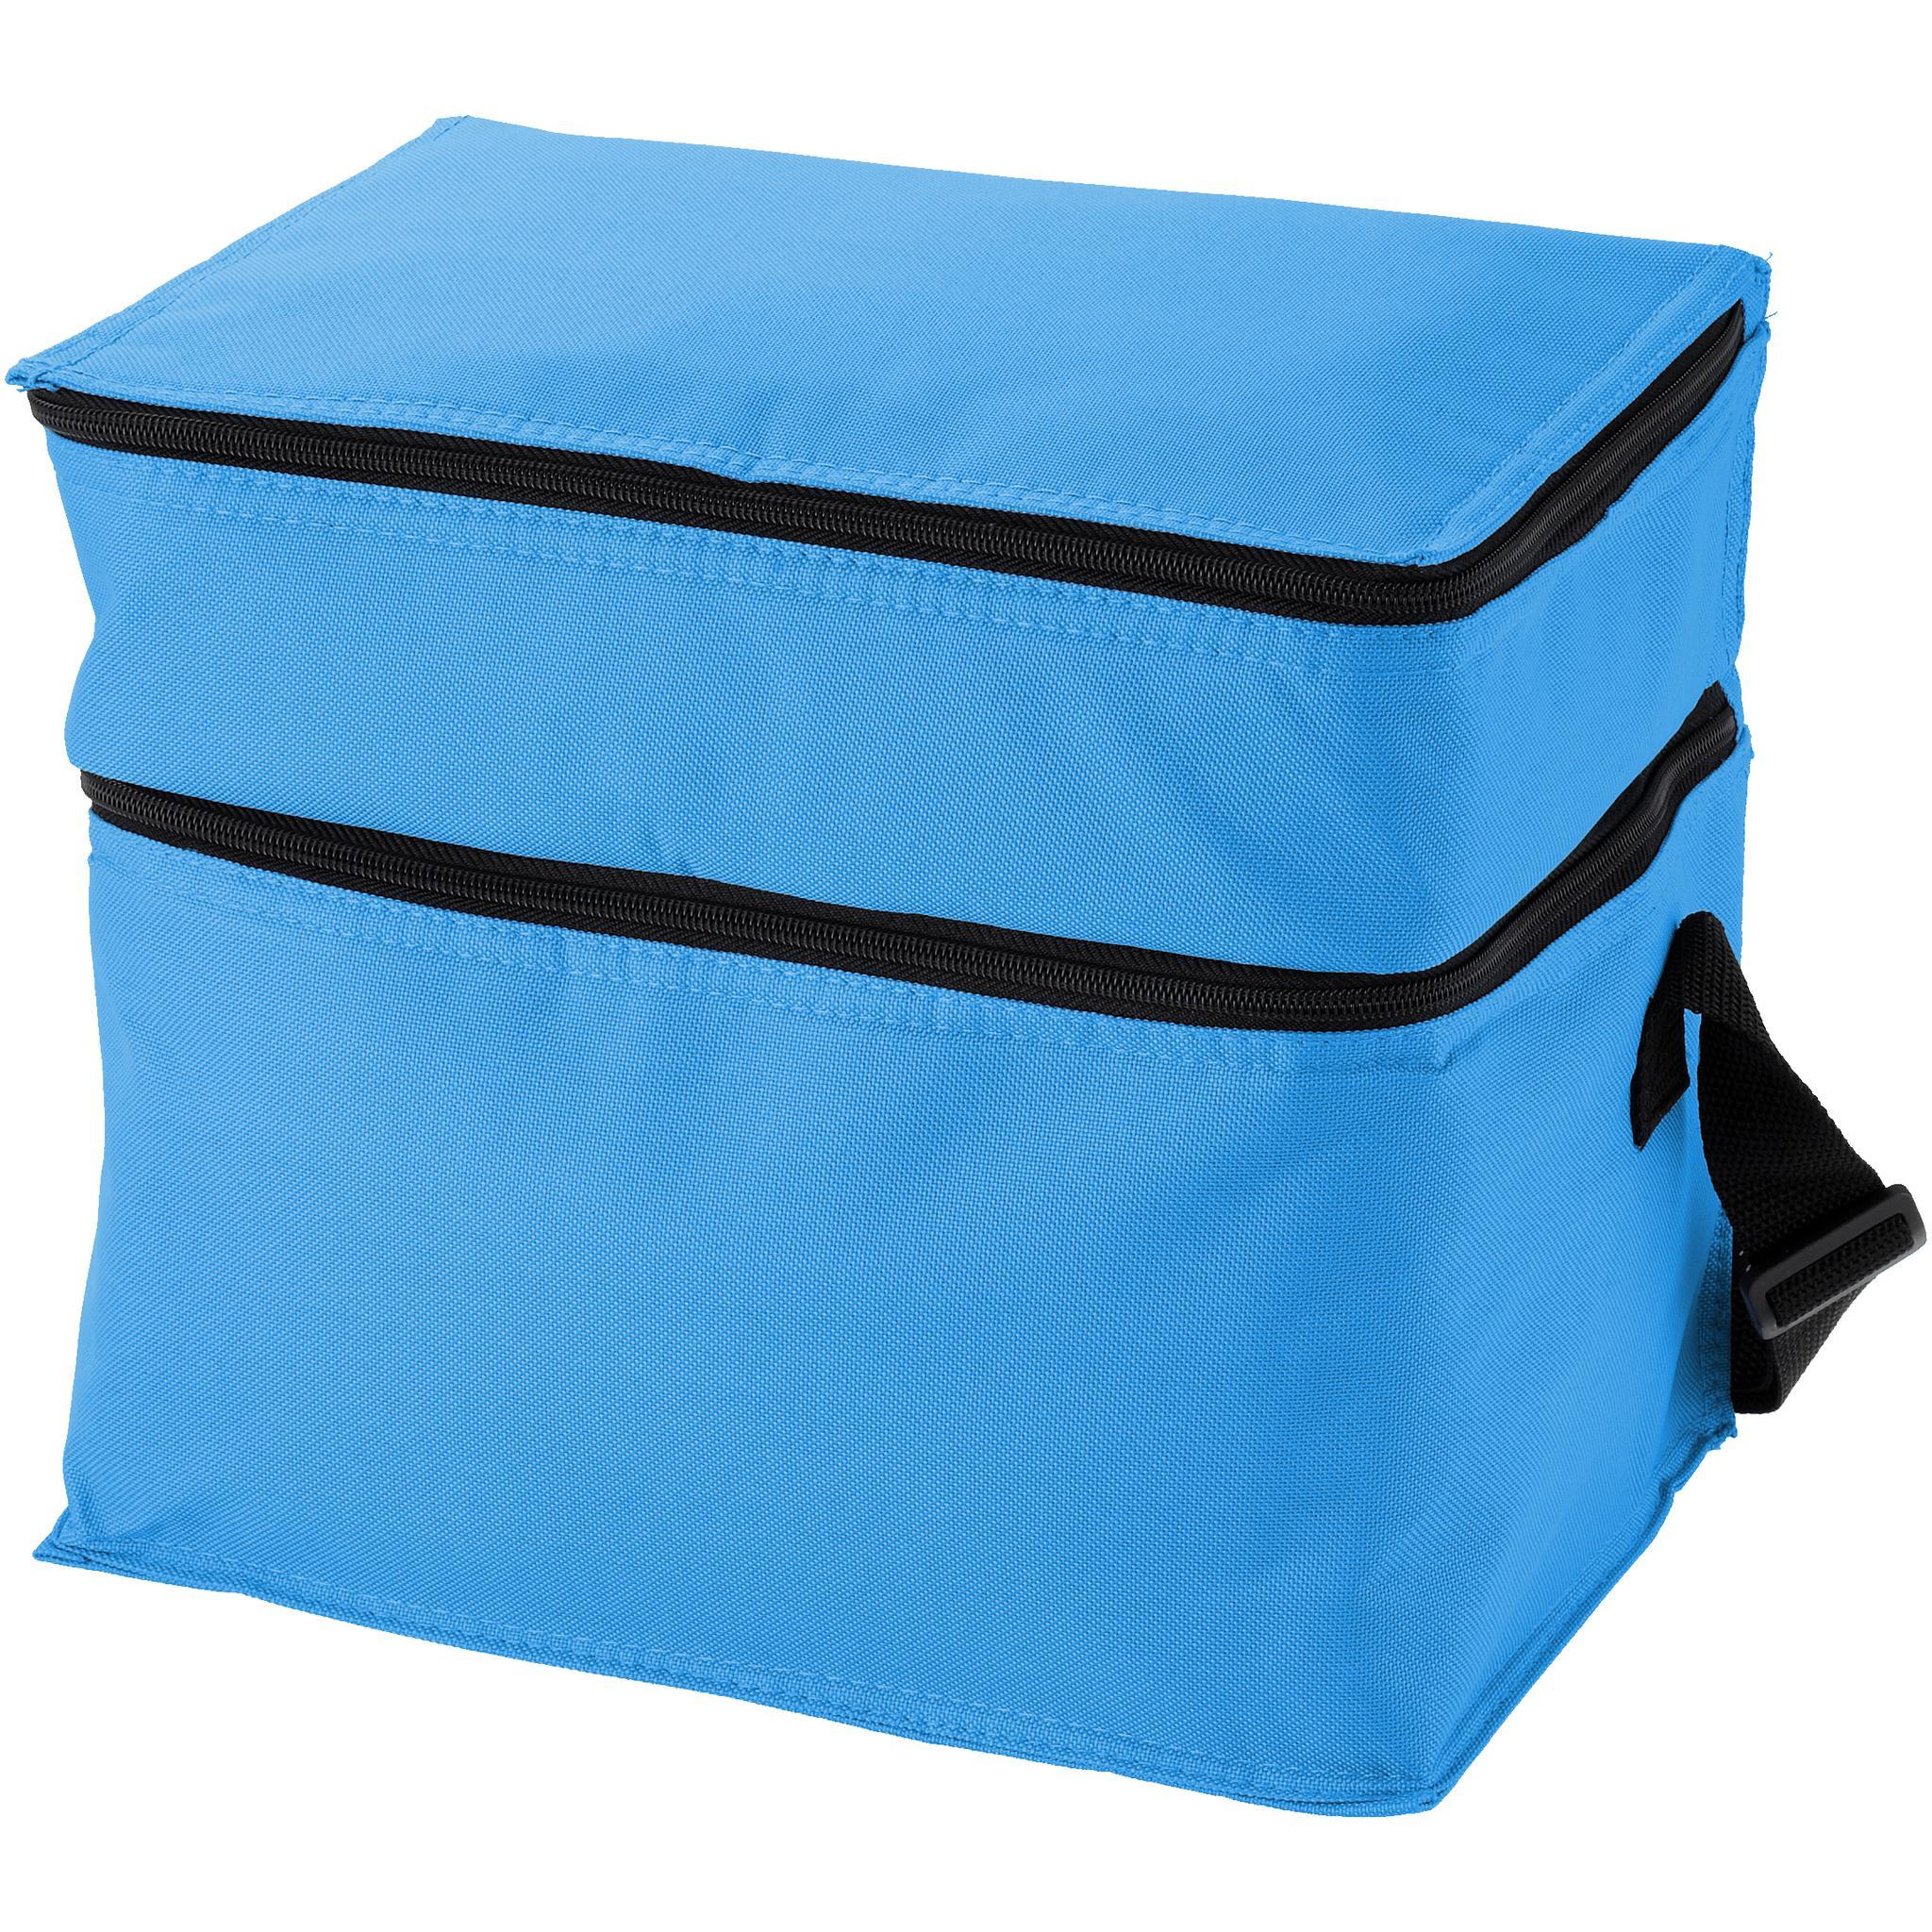 Bullet Oslo Cooler Bag (Aqua) (30 x 20 x 24.5cm)